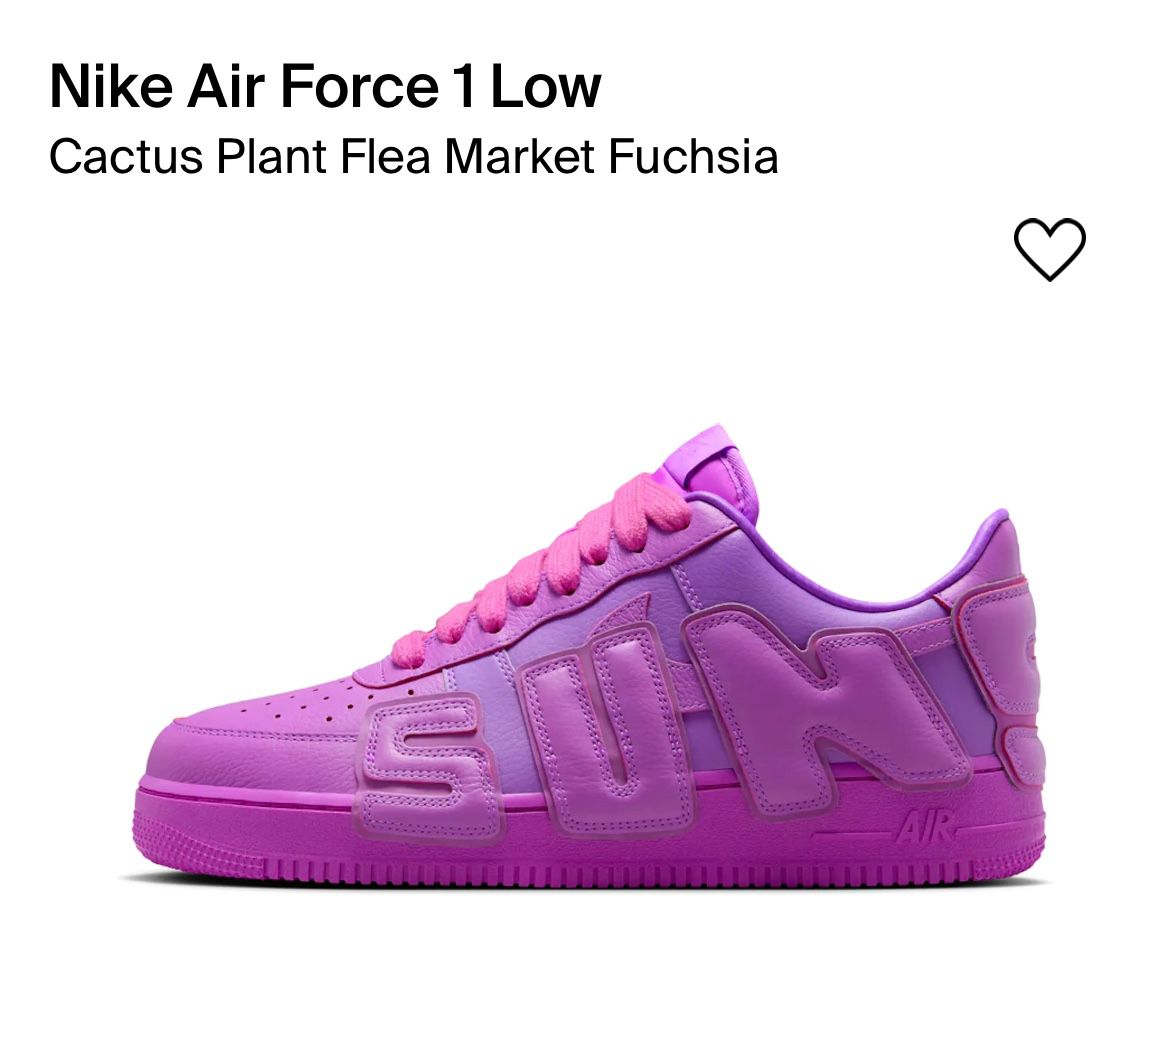 Nike Air Force 1 Low Cactus Plant Flea Market Fuchsia